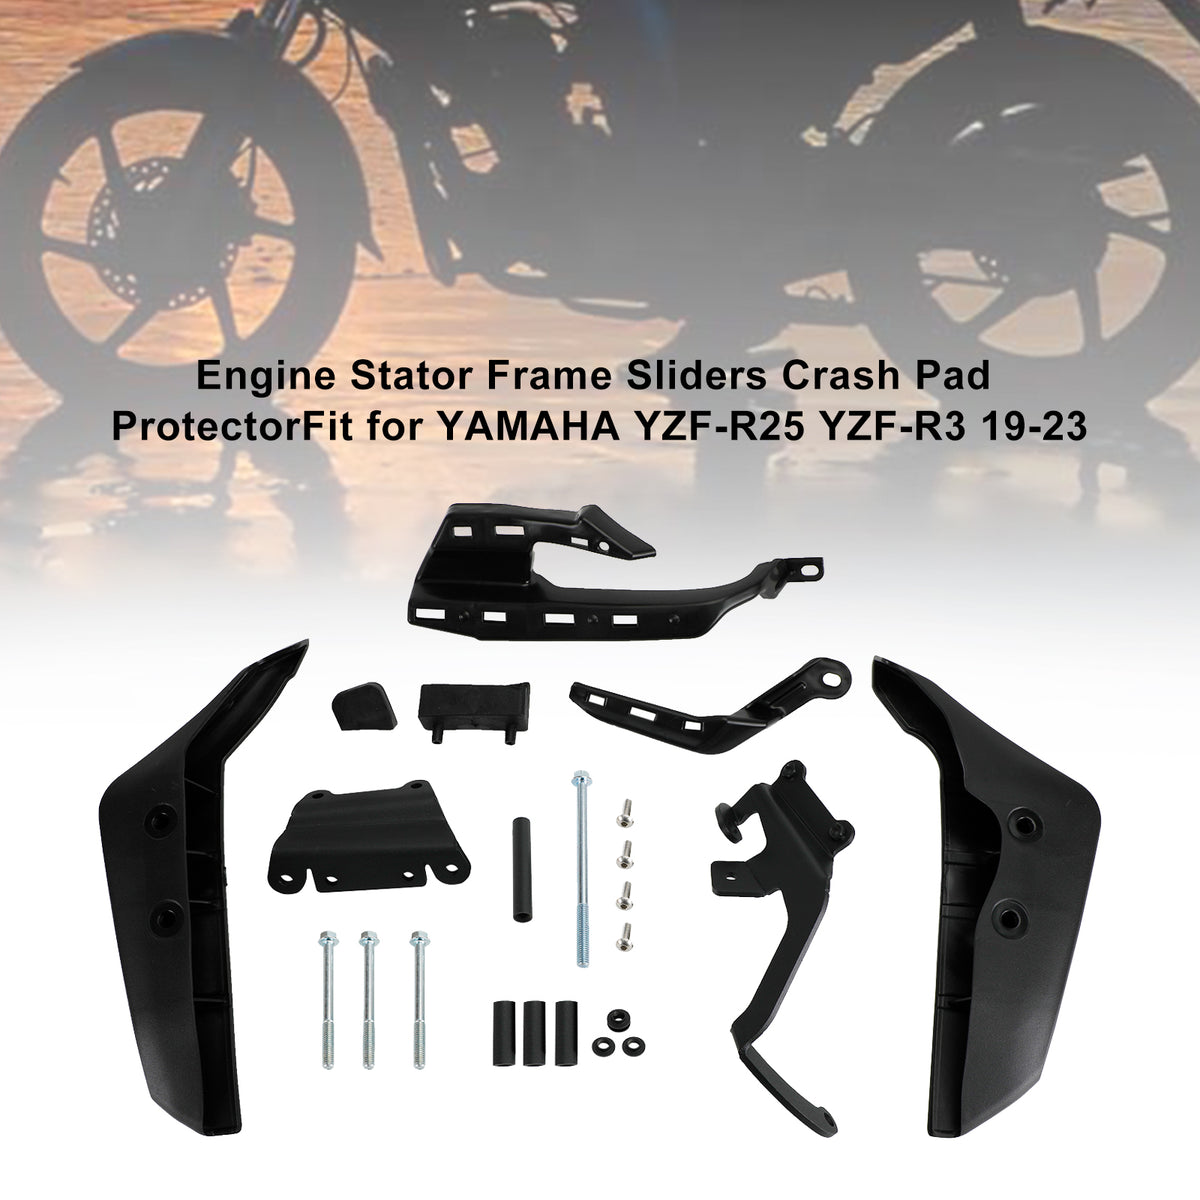 Protezione cursore coperchio motore statore in plastica per Yamaha Yzf-R25 Yzf-R3 19-23